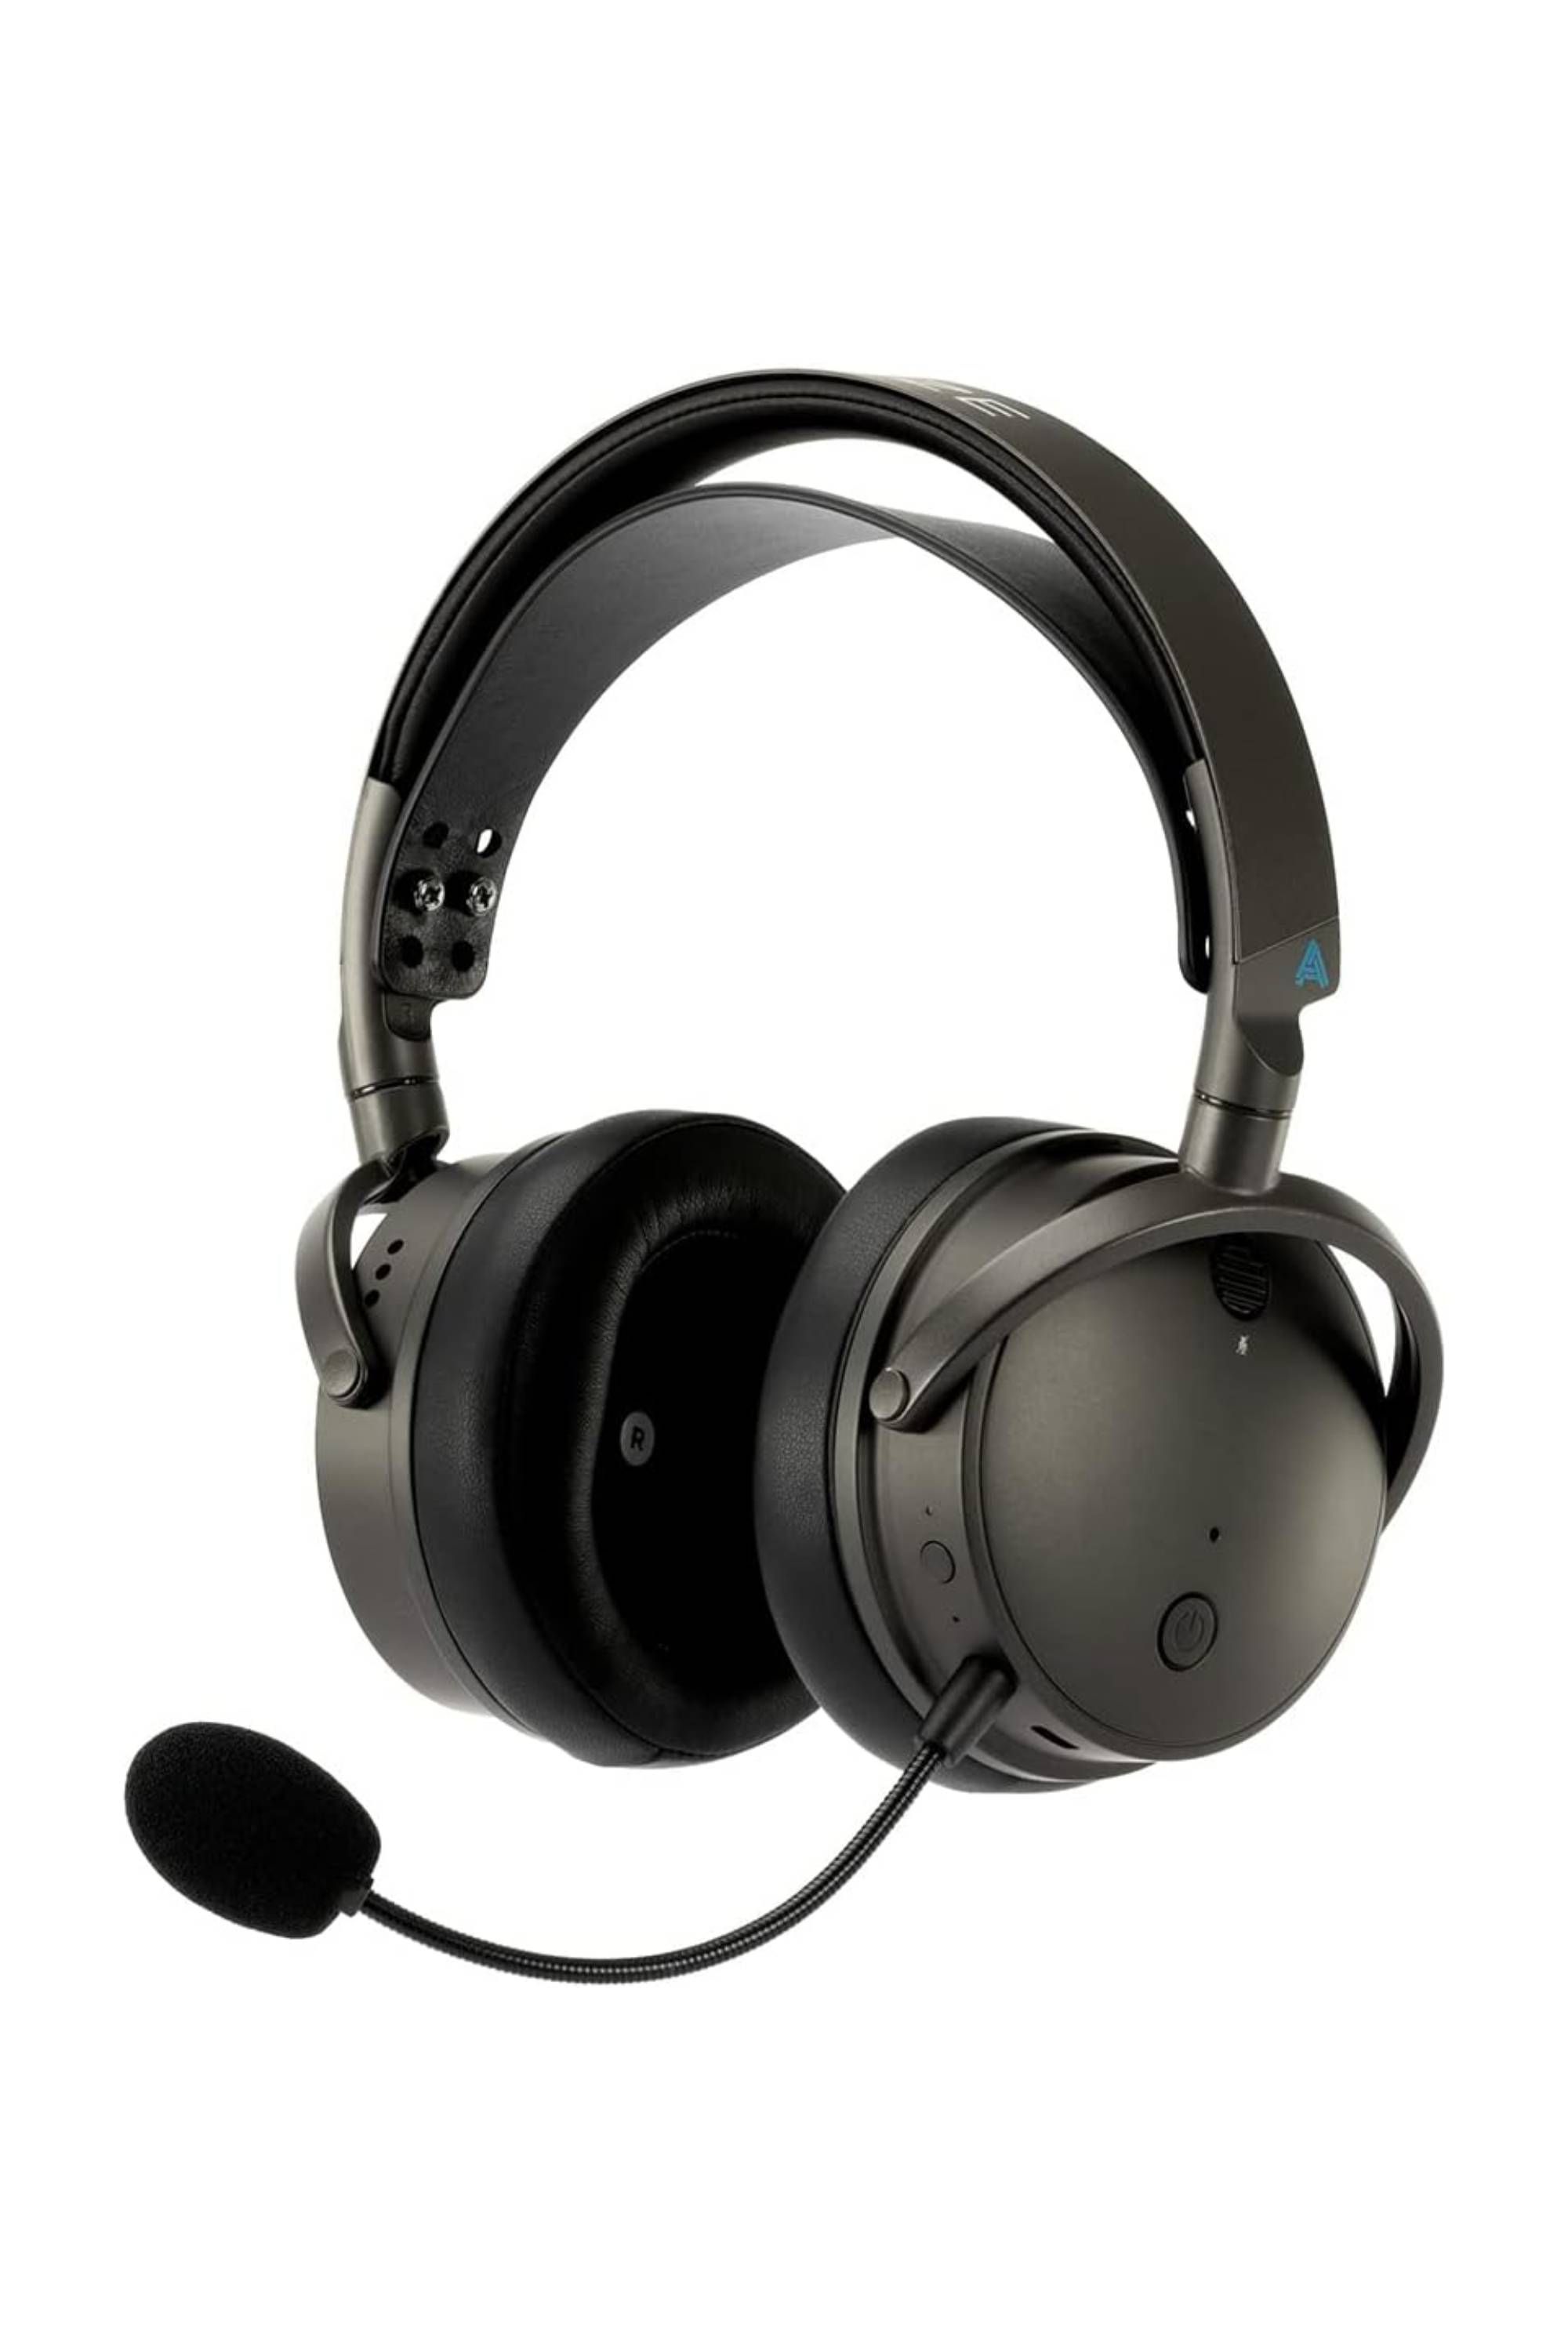 High End Gaming Headphones - Best Buy